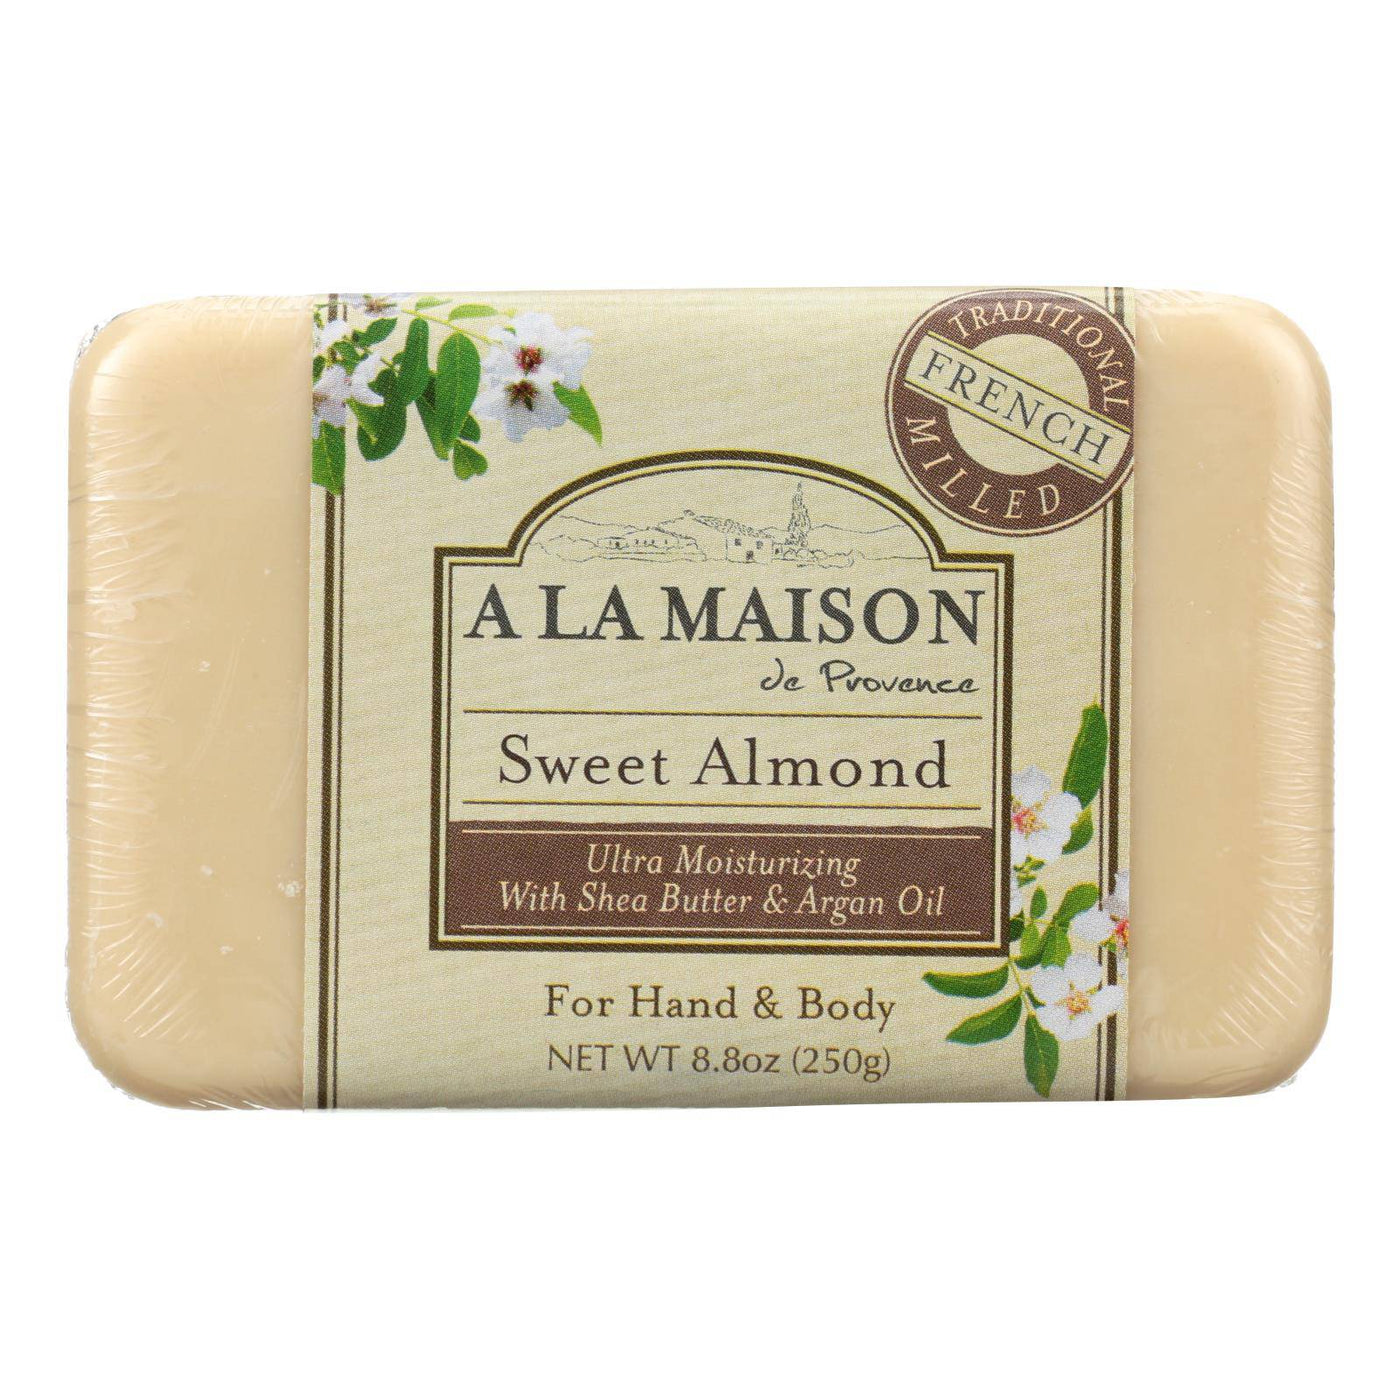 A La Maison - Bar Soap - Sweet Almond - 8.8 Oz | OnlyNaturals.us